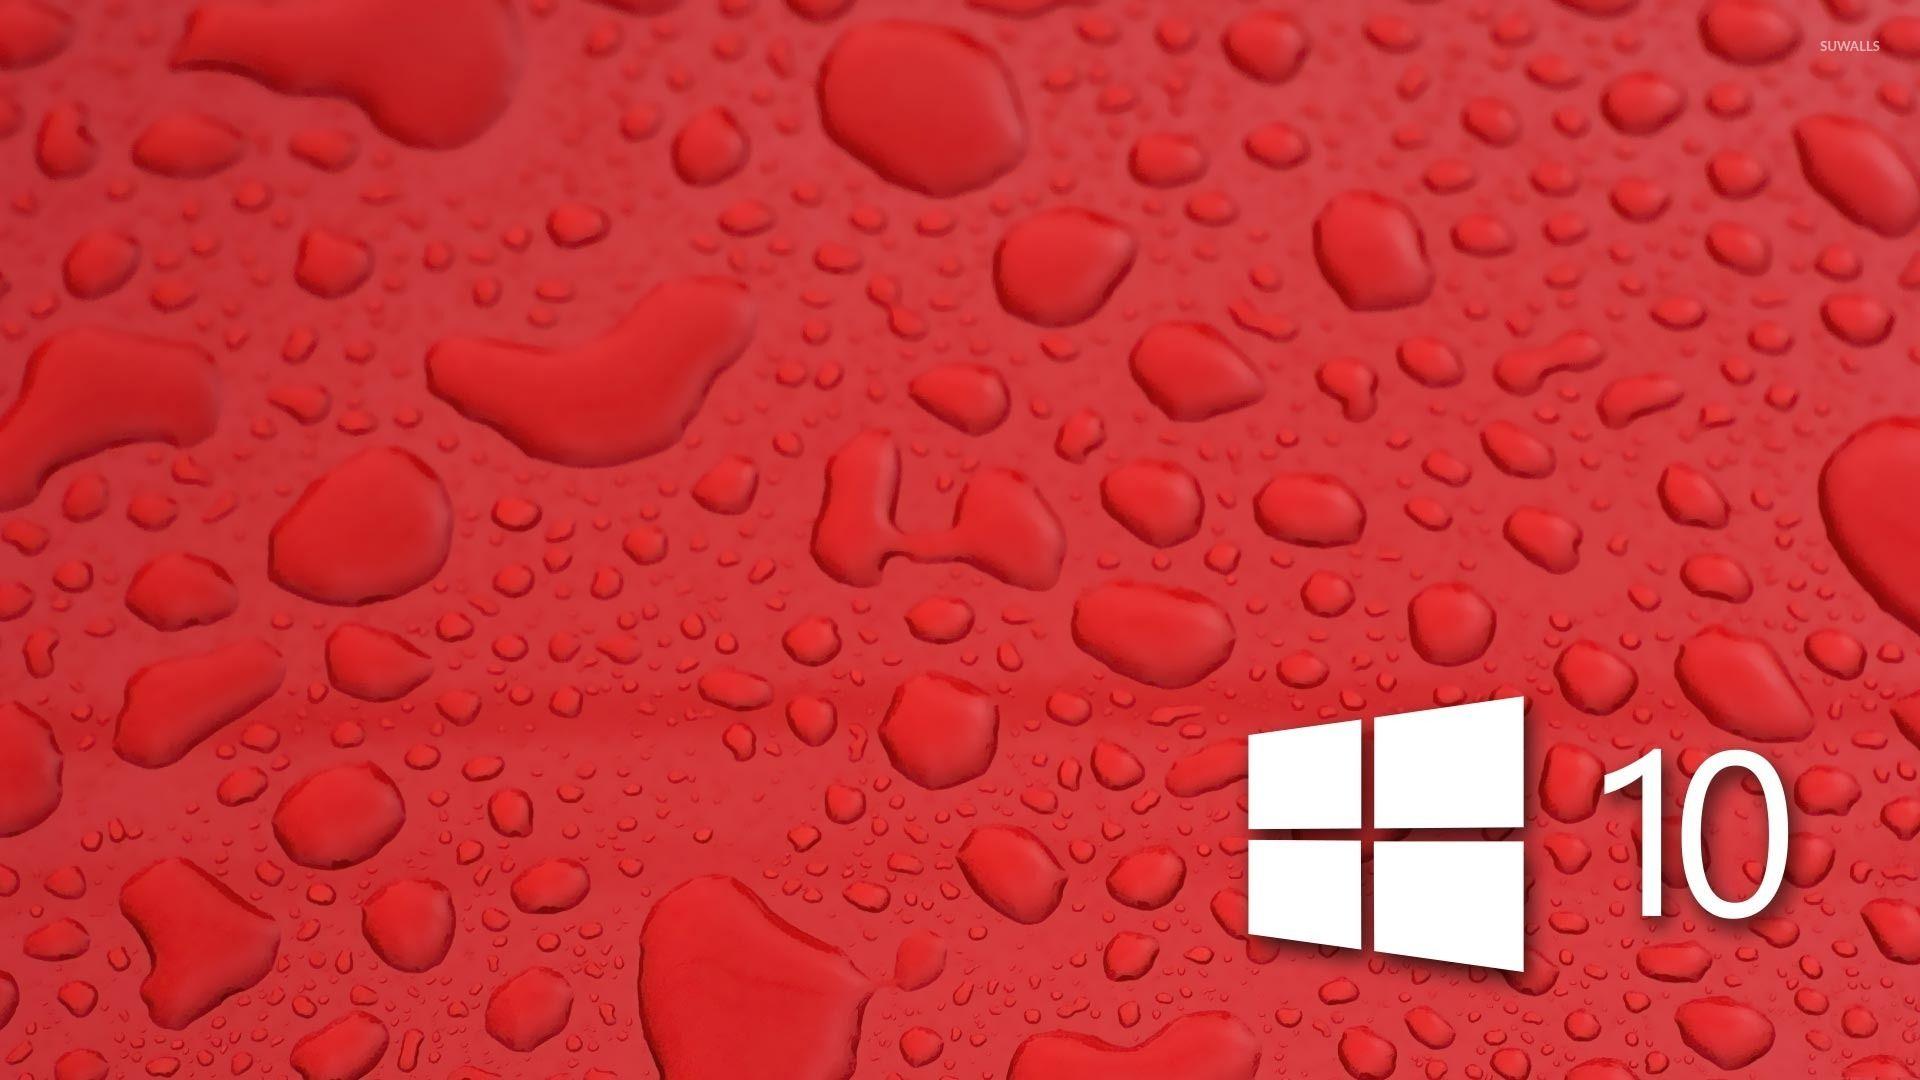 Windows 10 on water drops [3] wallpaper wallpaper